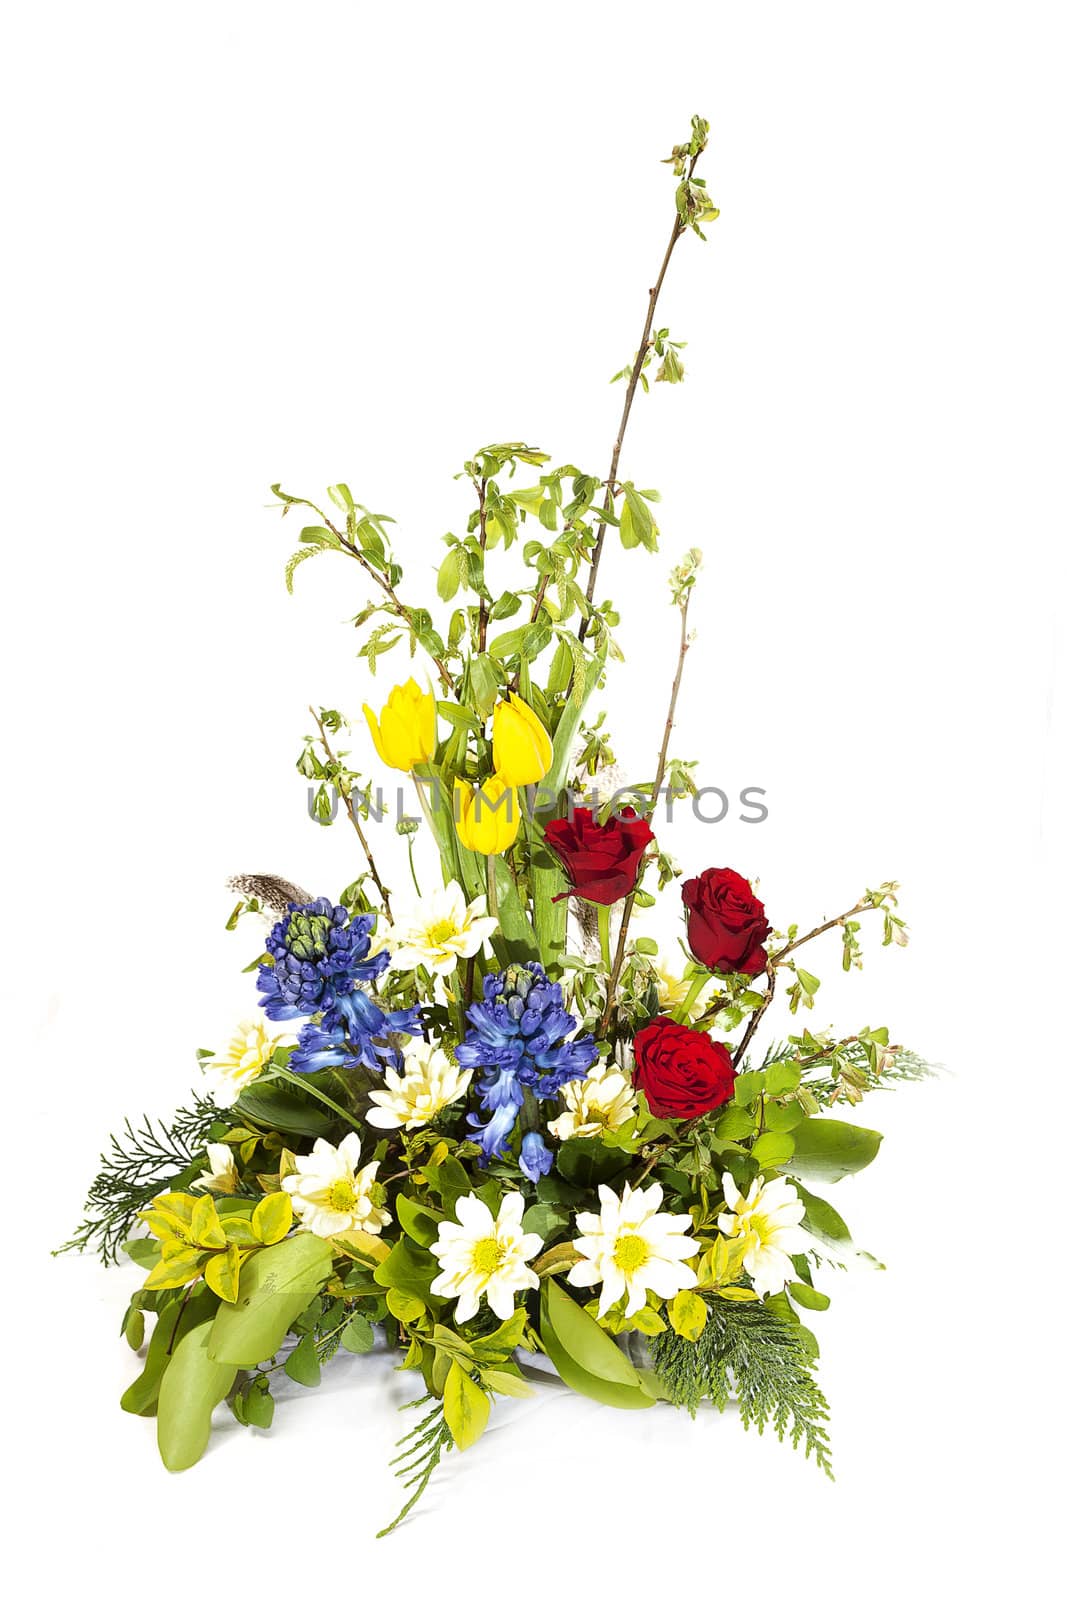 Arranged flowers by michalpecek